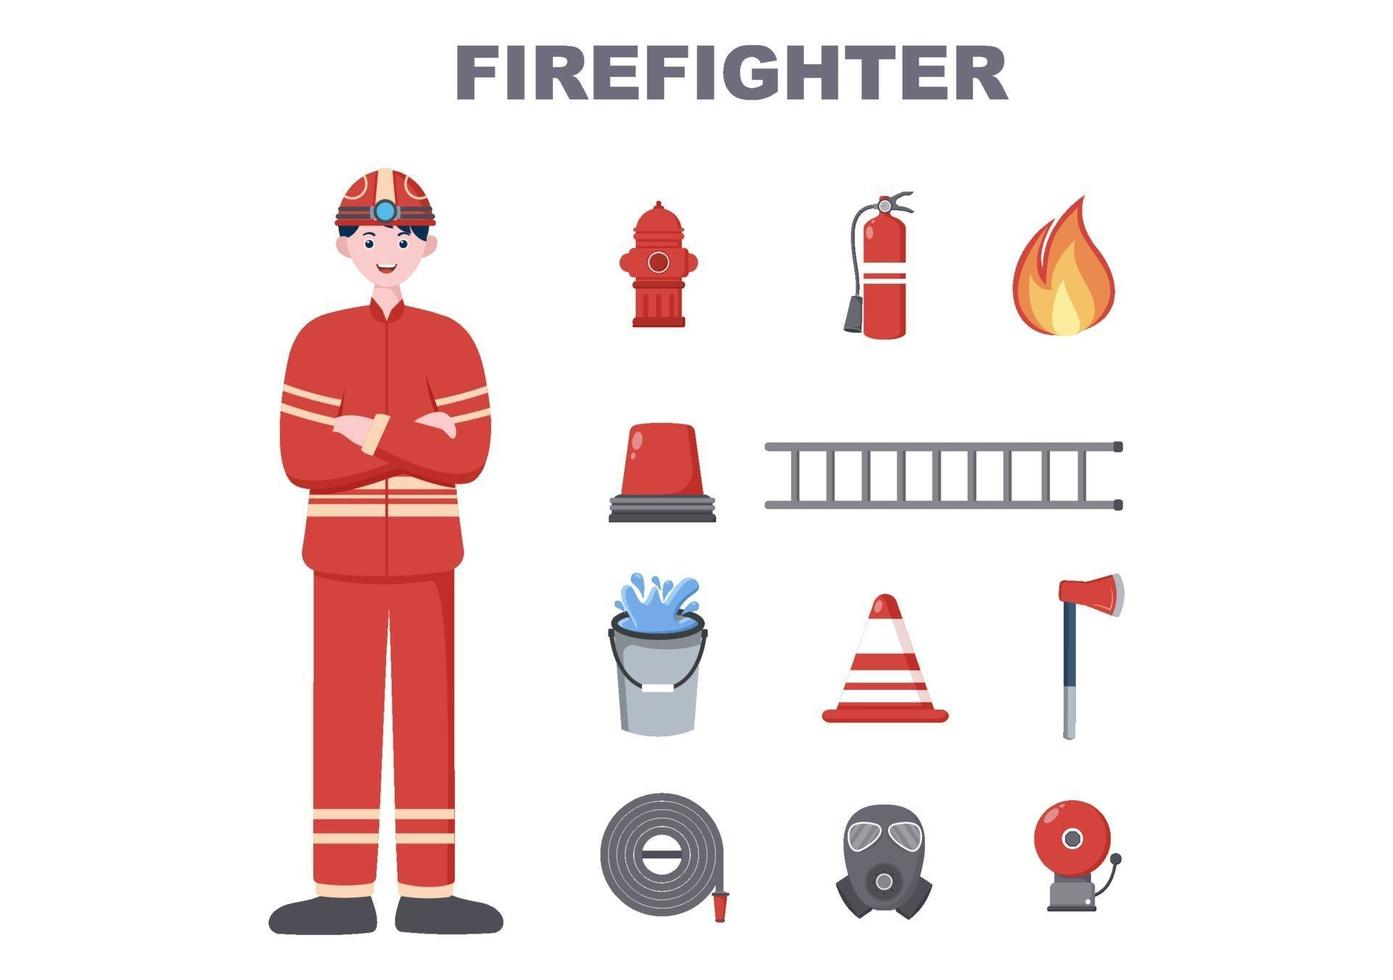 pompiers avec des camions d'incendie, aidant les personnes et les animaux, utilisant du matériel de sauvetage dans diverses situations. illustration vectorielle vecteur